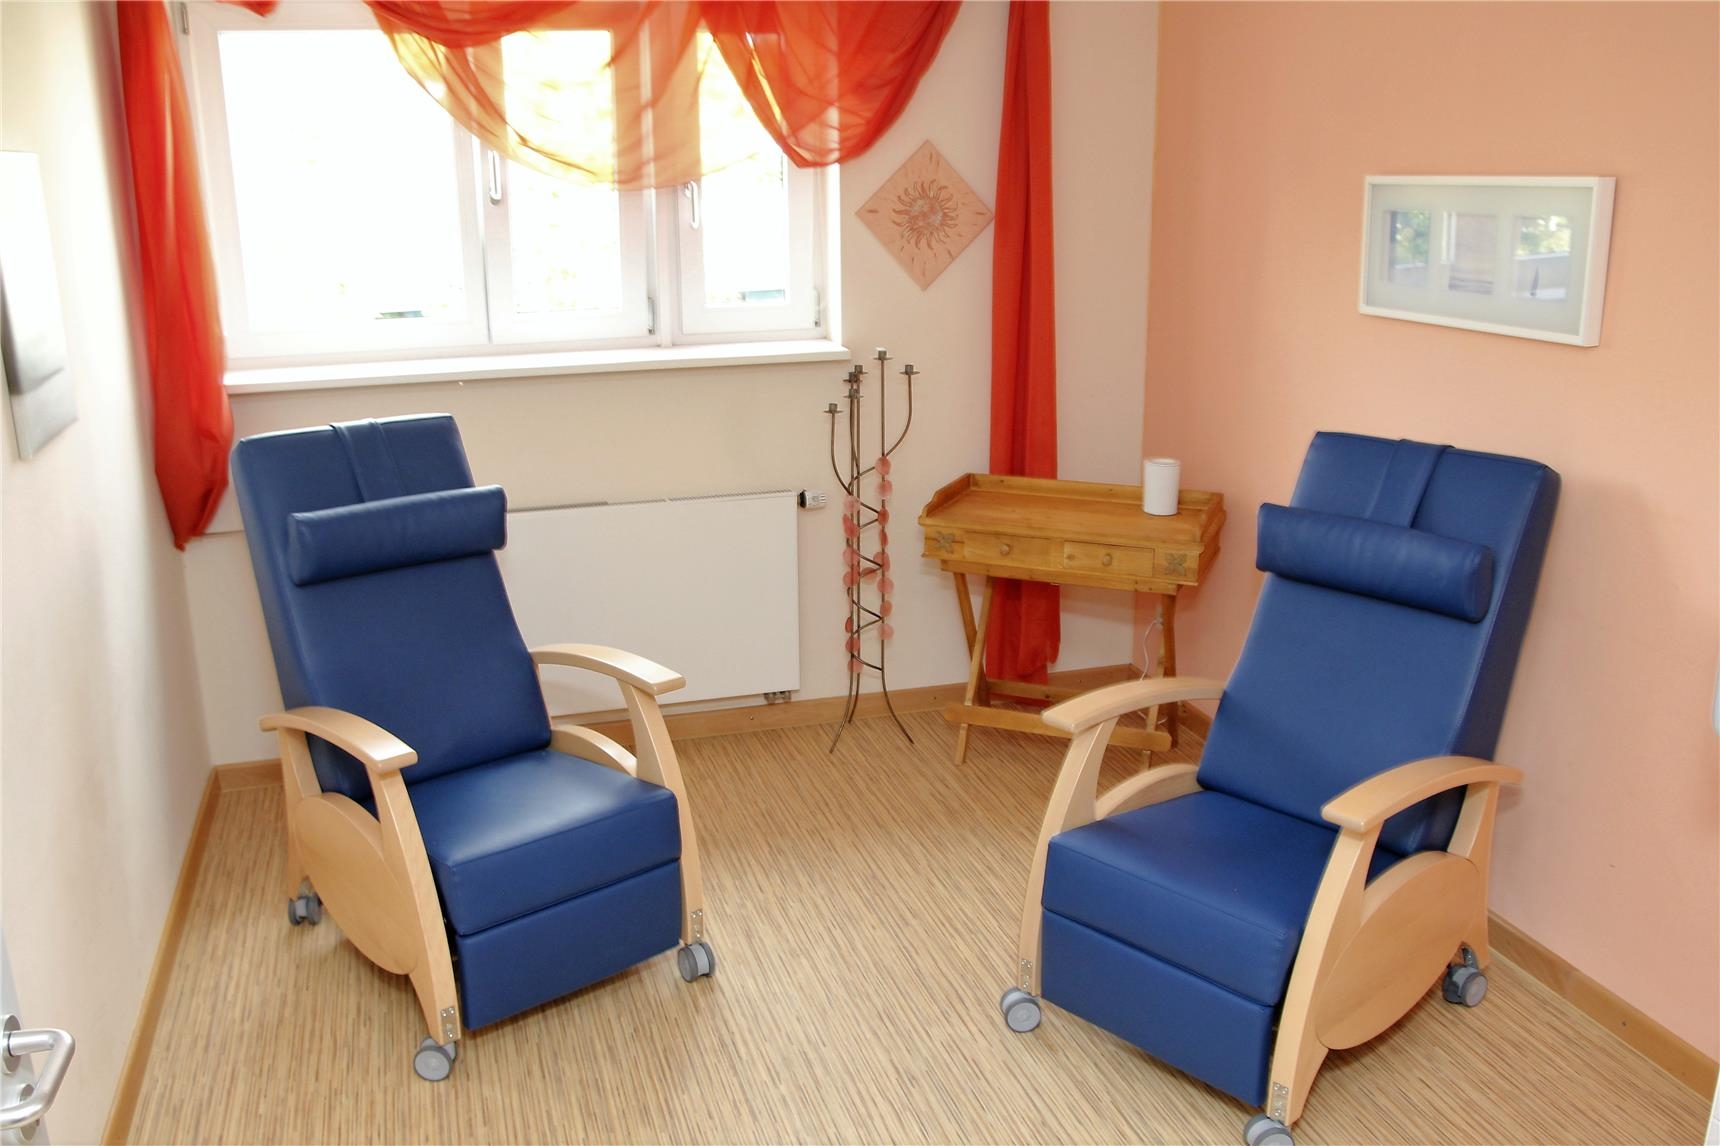 Der Ruheraum für die Tagespflege mit den Pflege-Relax-Stühlen.  (Bernhard Gattner)